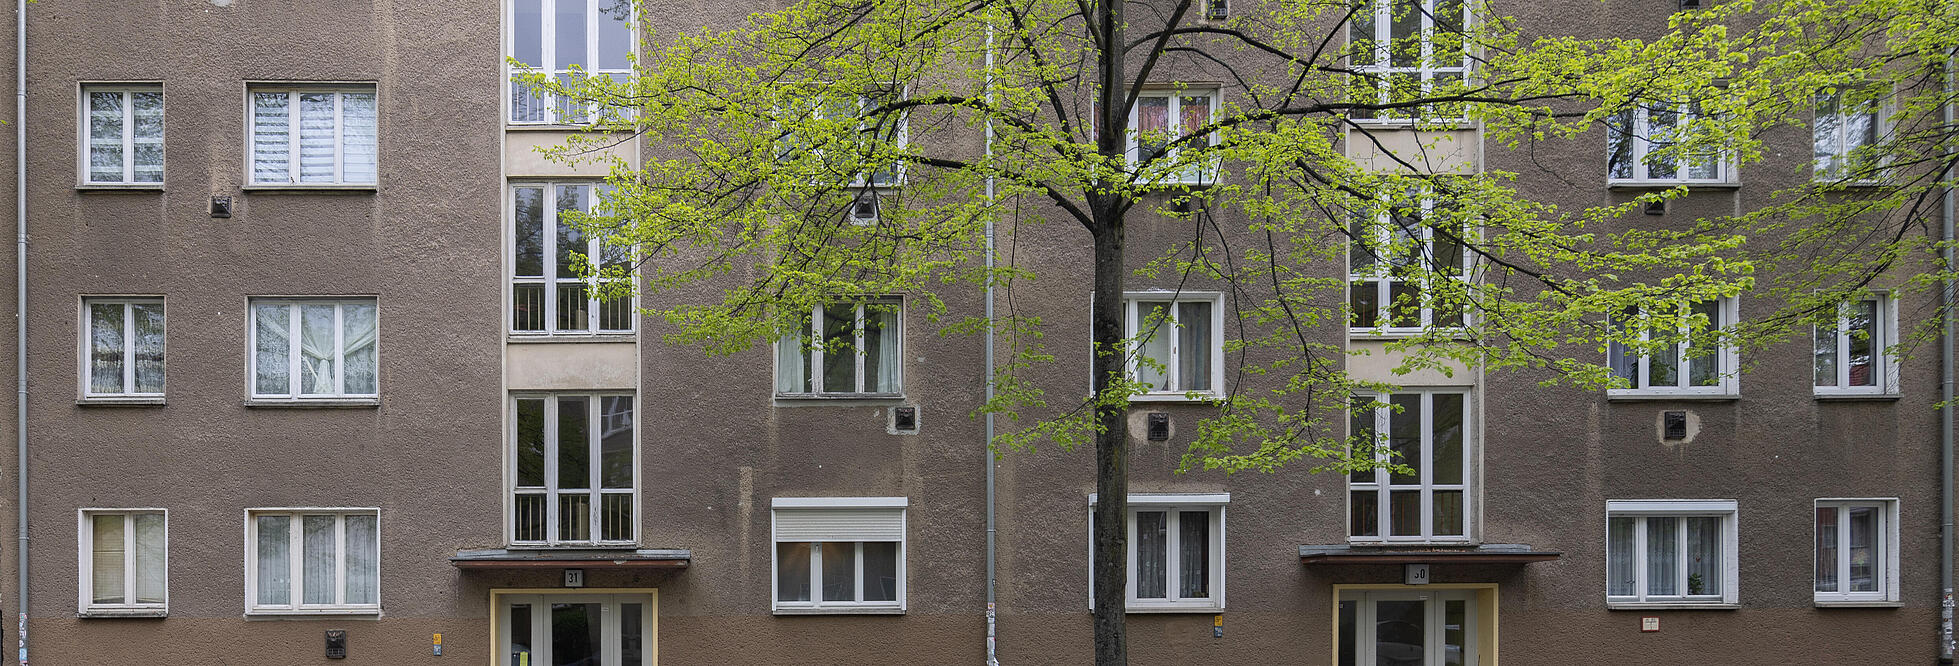 straßenseitige Fassade eines fünfstöckigen Wohnhauses vor Modernisierung